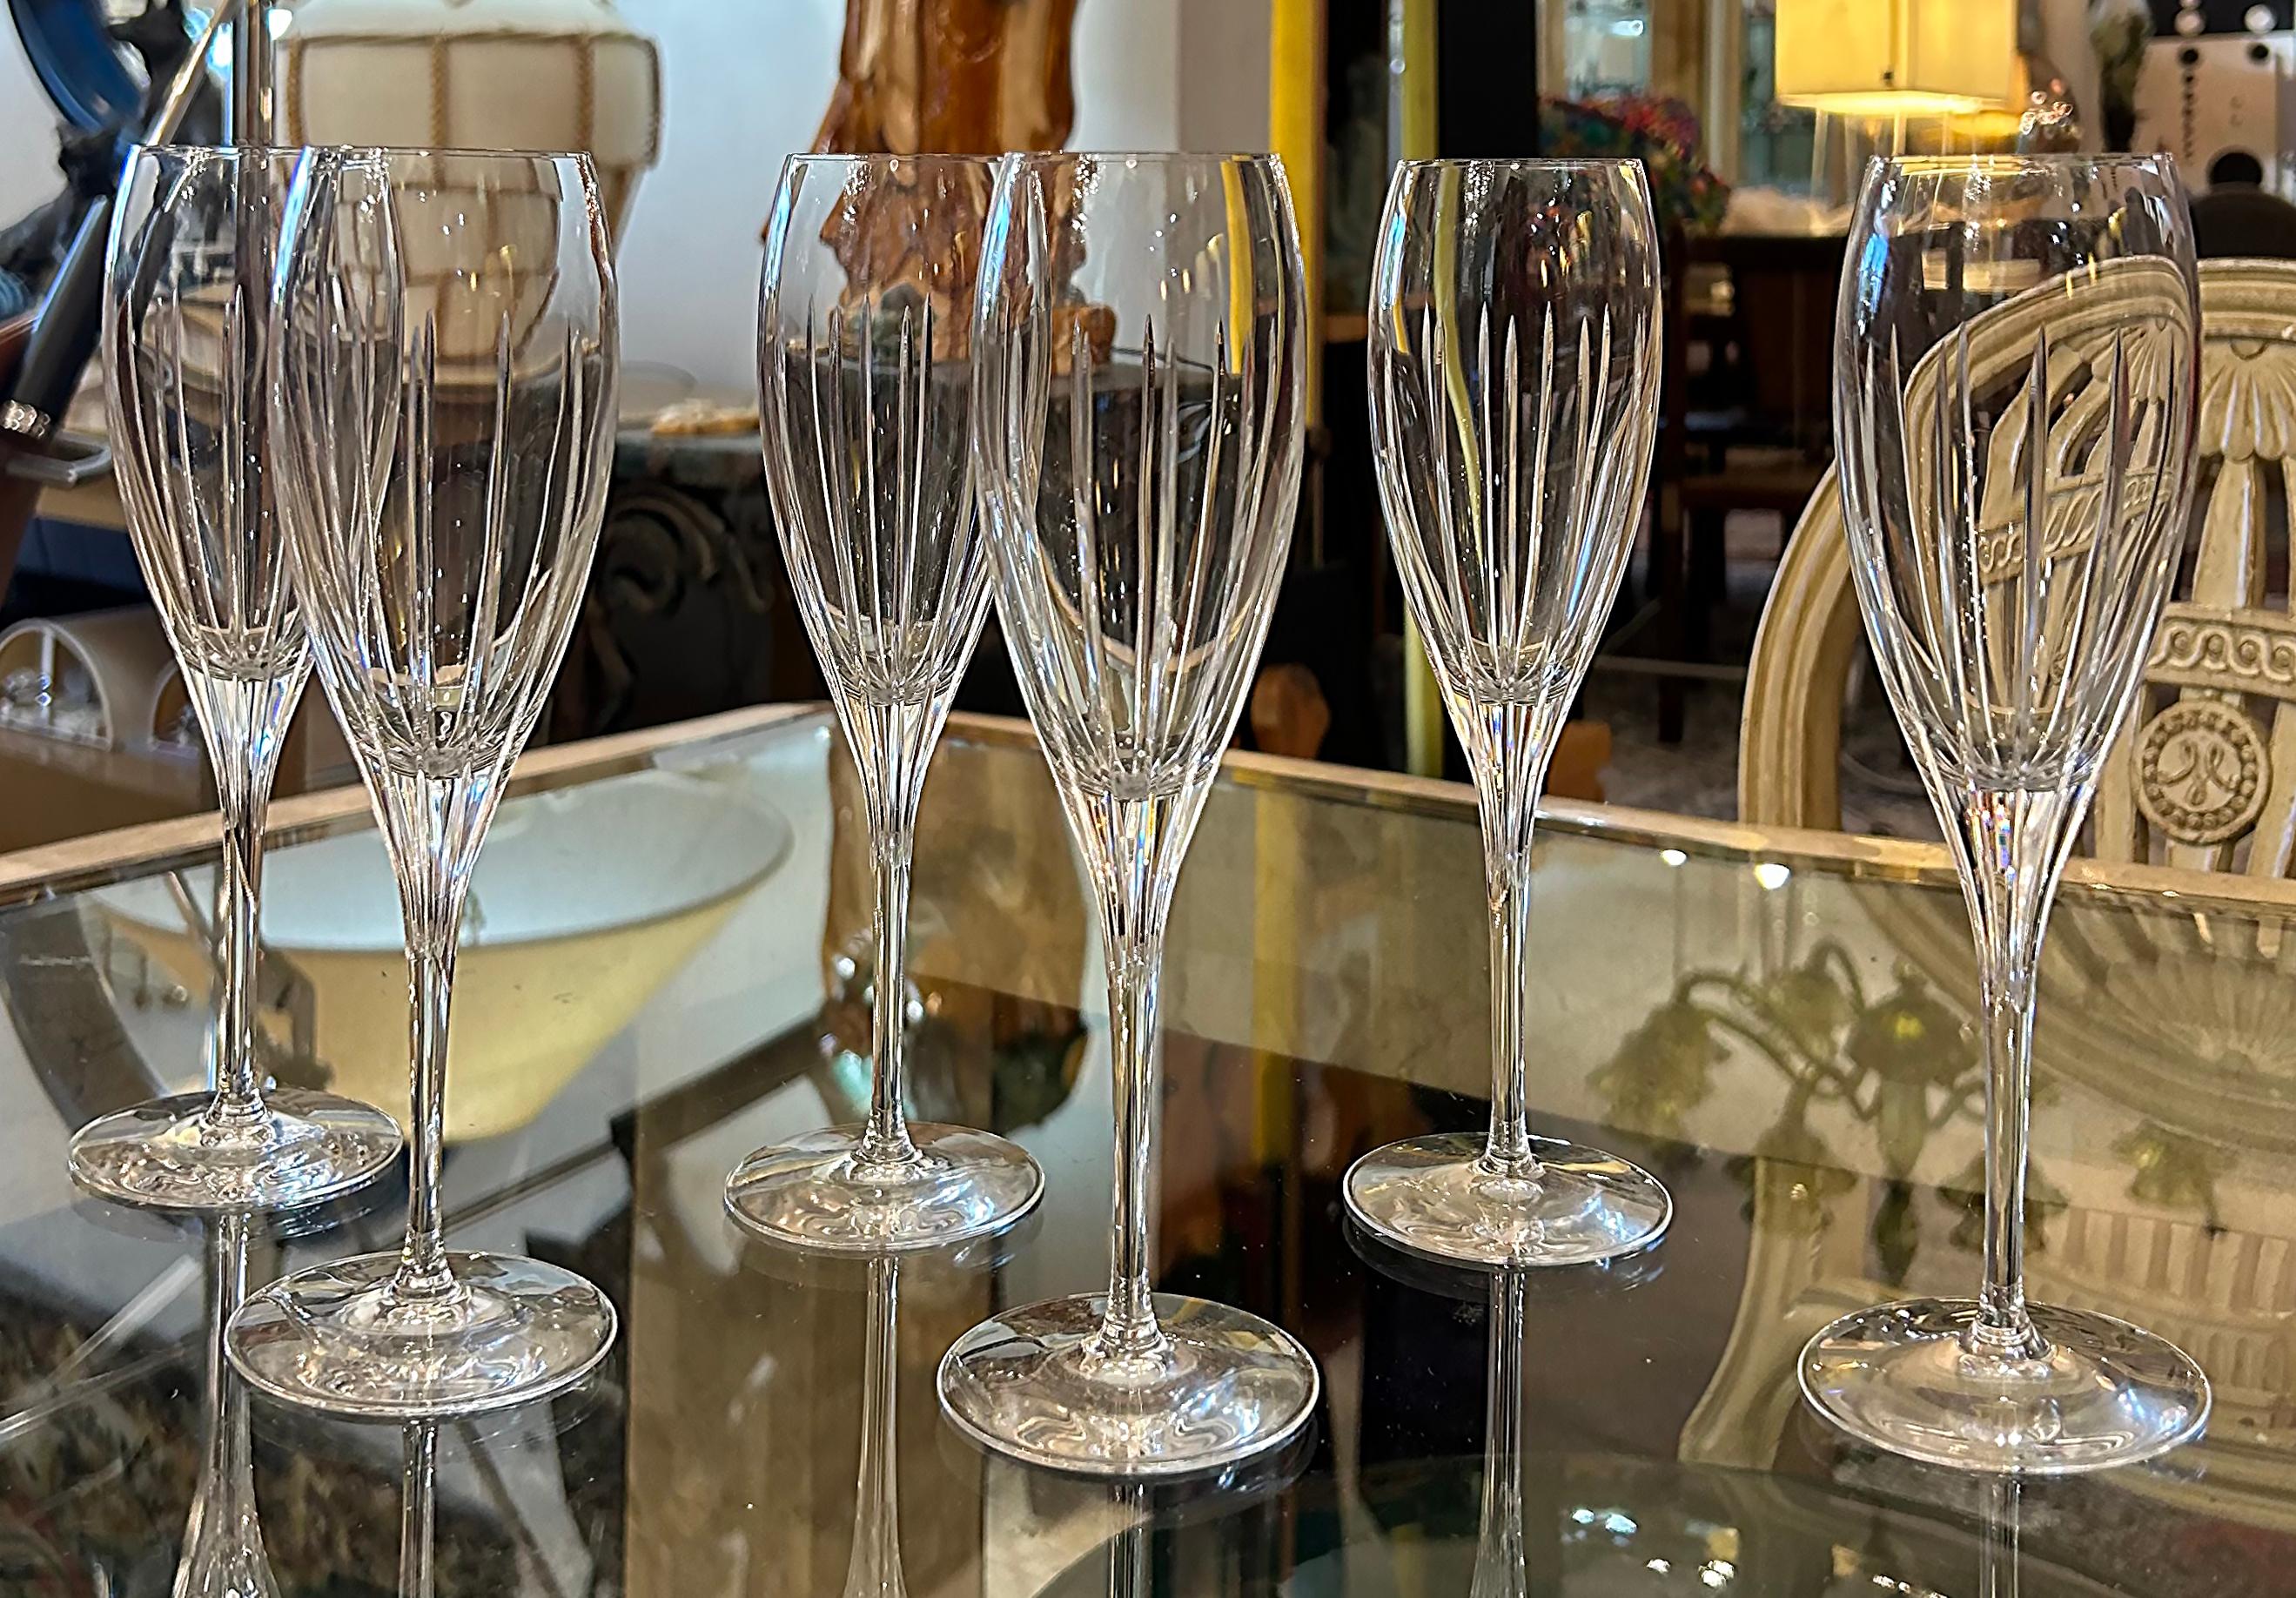 Set von 6 Christofle-Champagnerflöten aus mundgeblasenem Kristallglas „Iriana“ mit Champagnerflöten

Zum Verkauf steht ein Satz von sechs Christofle-Champagnerflötengläsern aus geblasenem Kristall mit dem Muster 